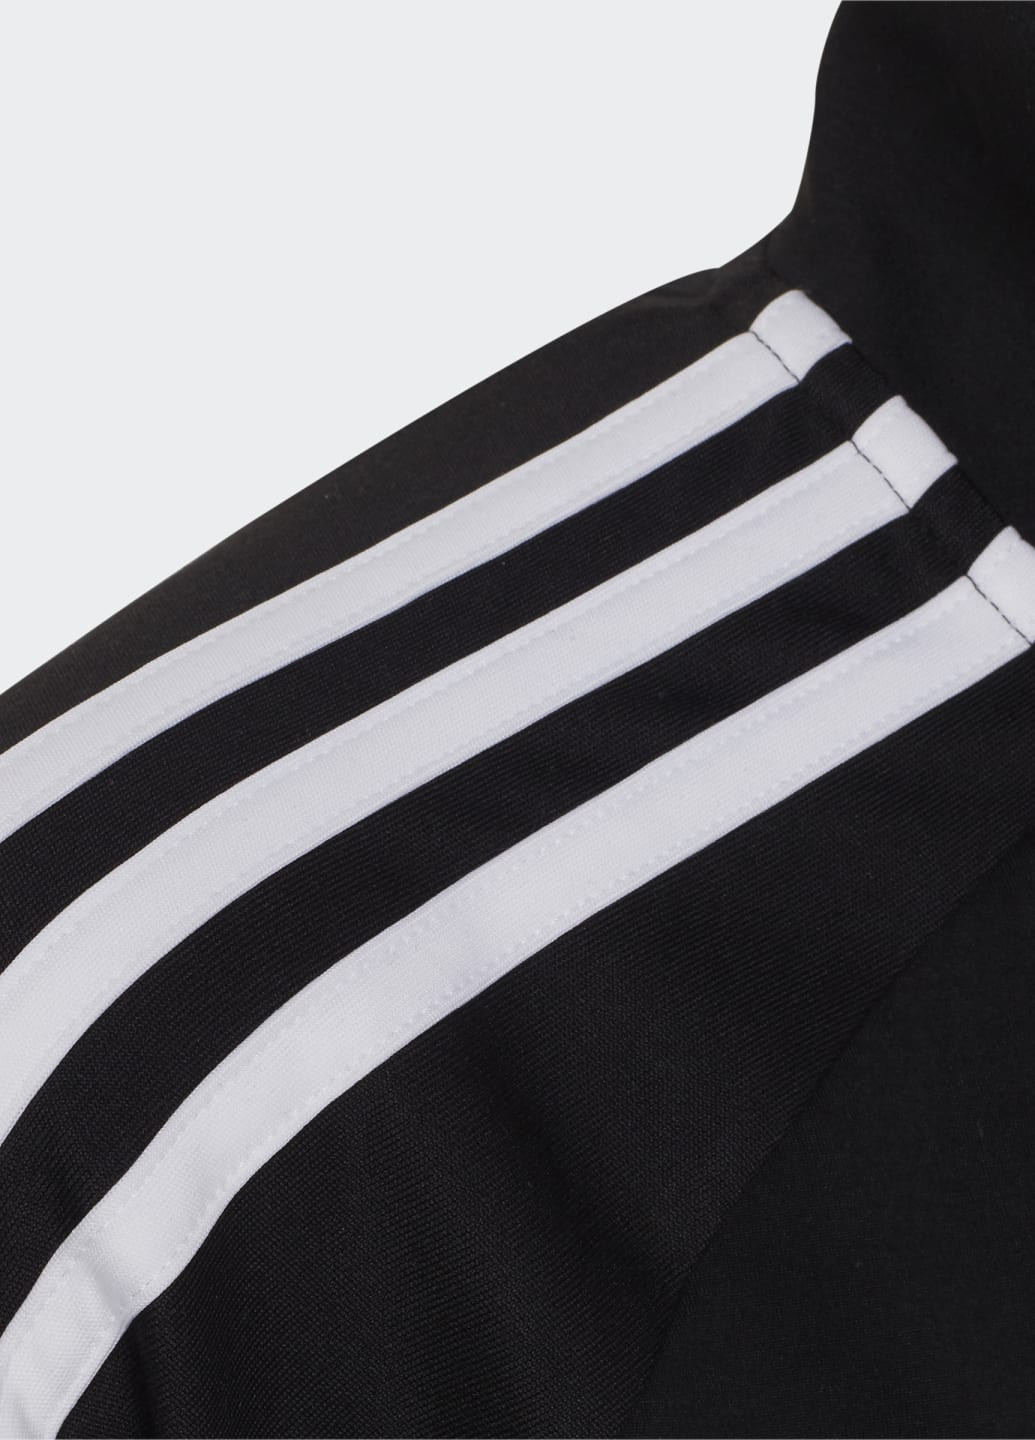 Черная летняя спортивная куртка sereno 1/4-zip adidas